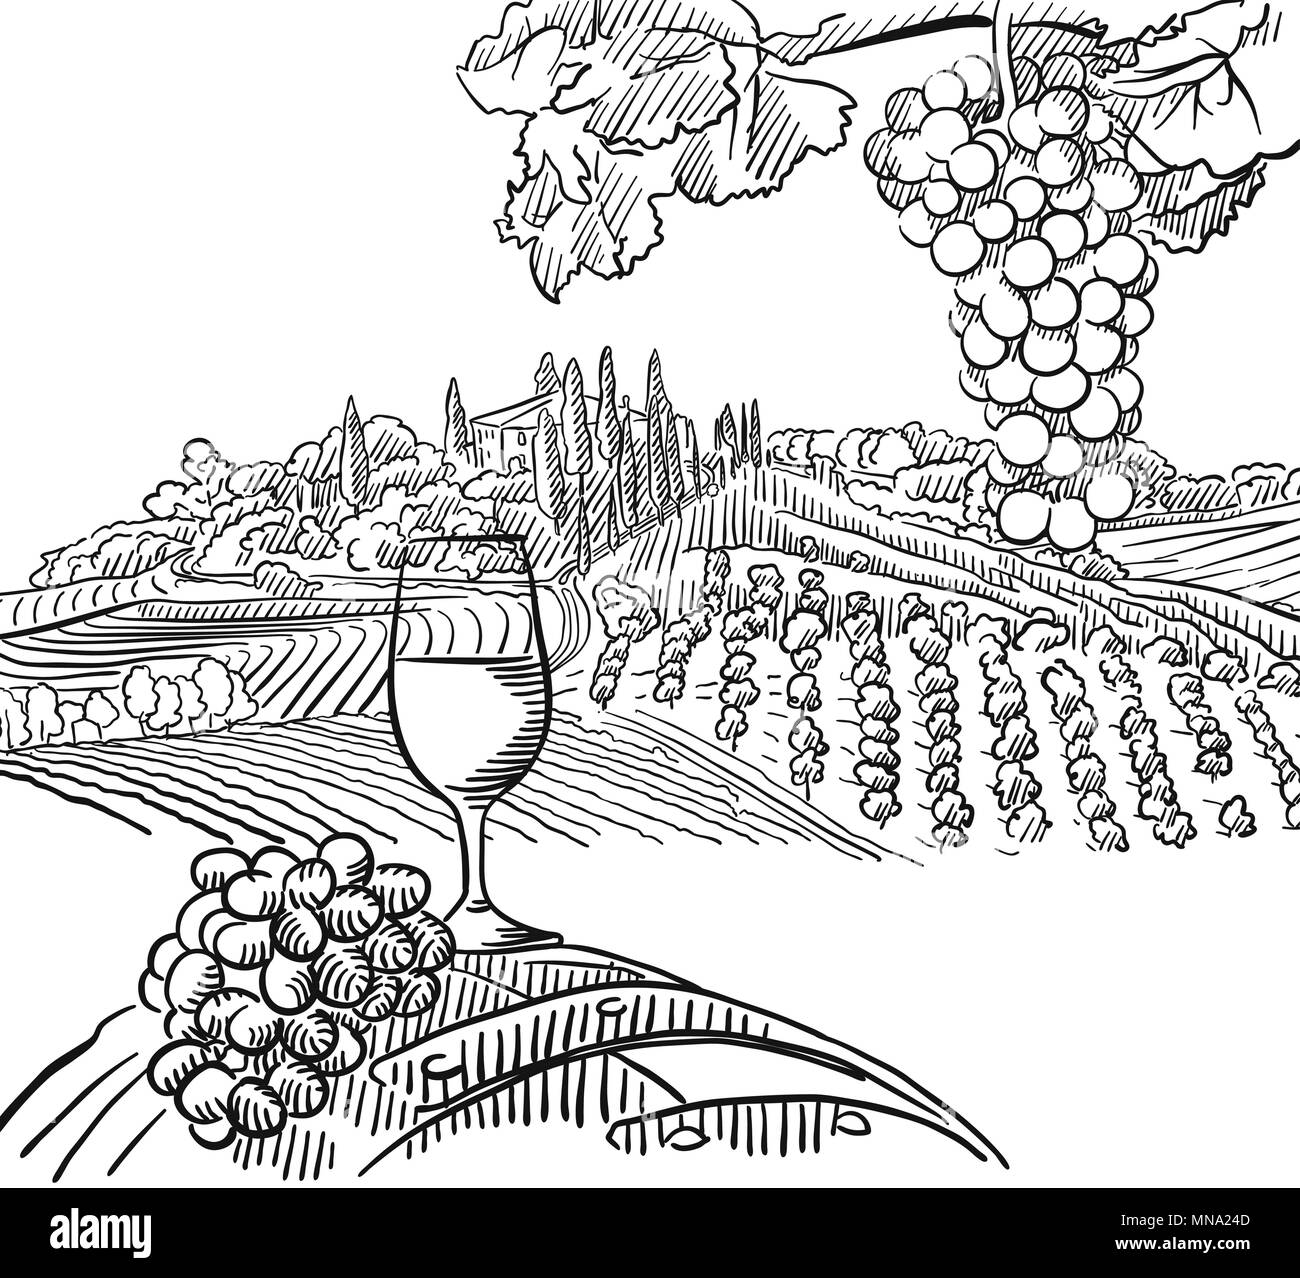 Vignoble La Composition avec du raisin et de la vigne en verre, scénario dessiné Contours Artwork Illustration de Vecteur